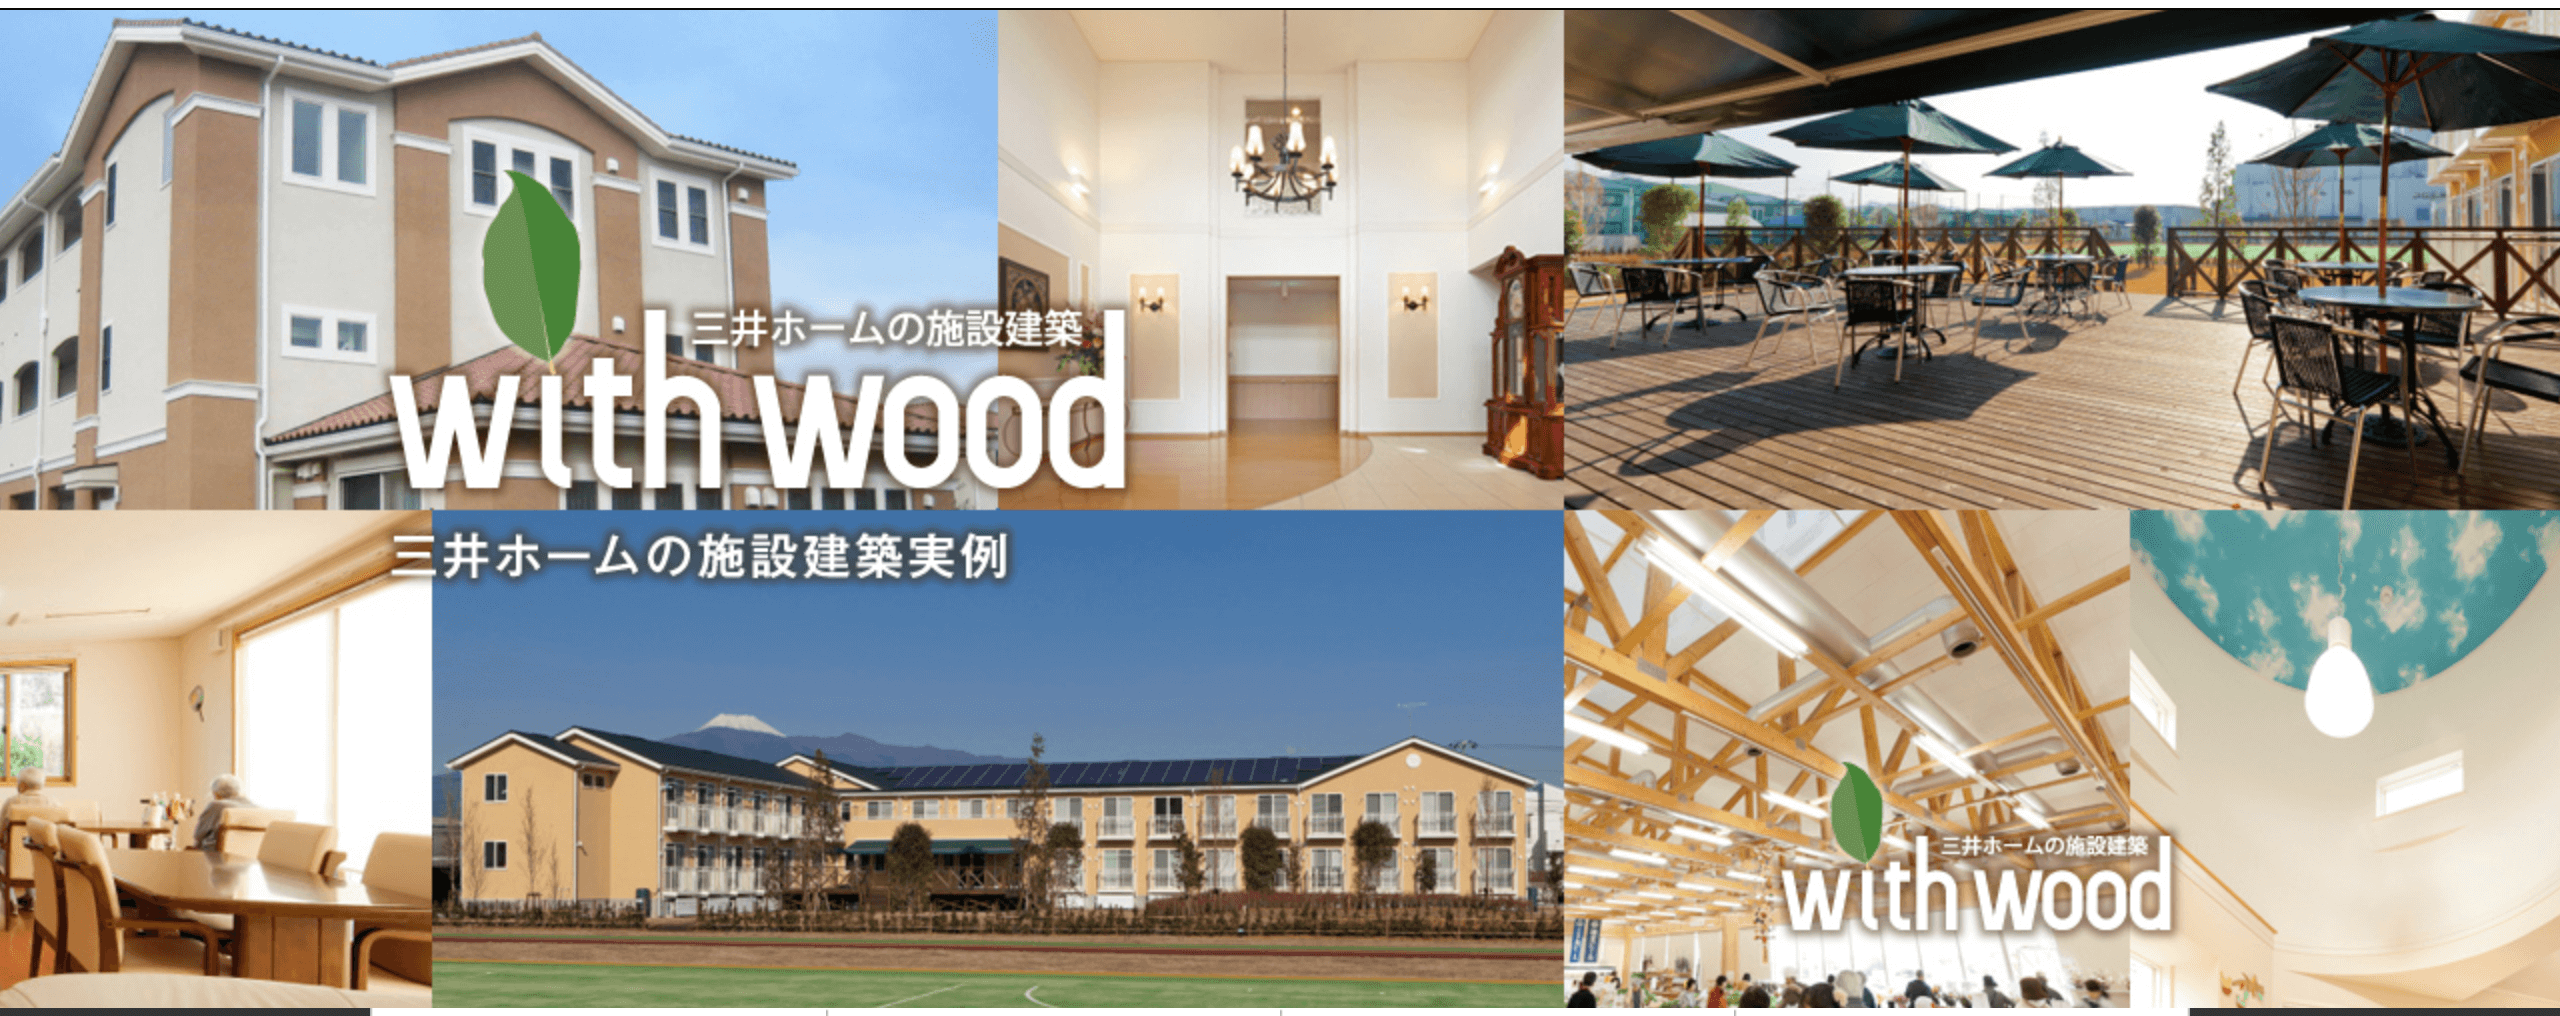 三井ホームの施設建設「with wood」